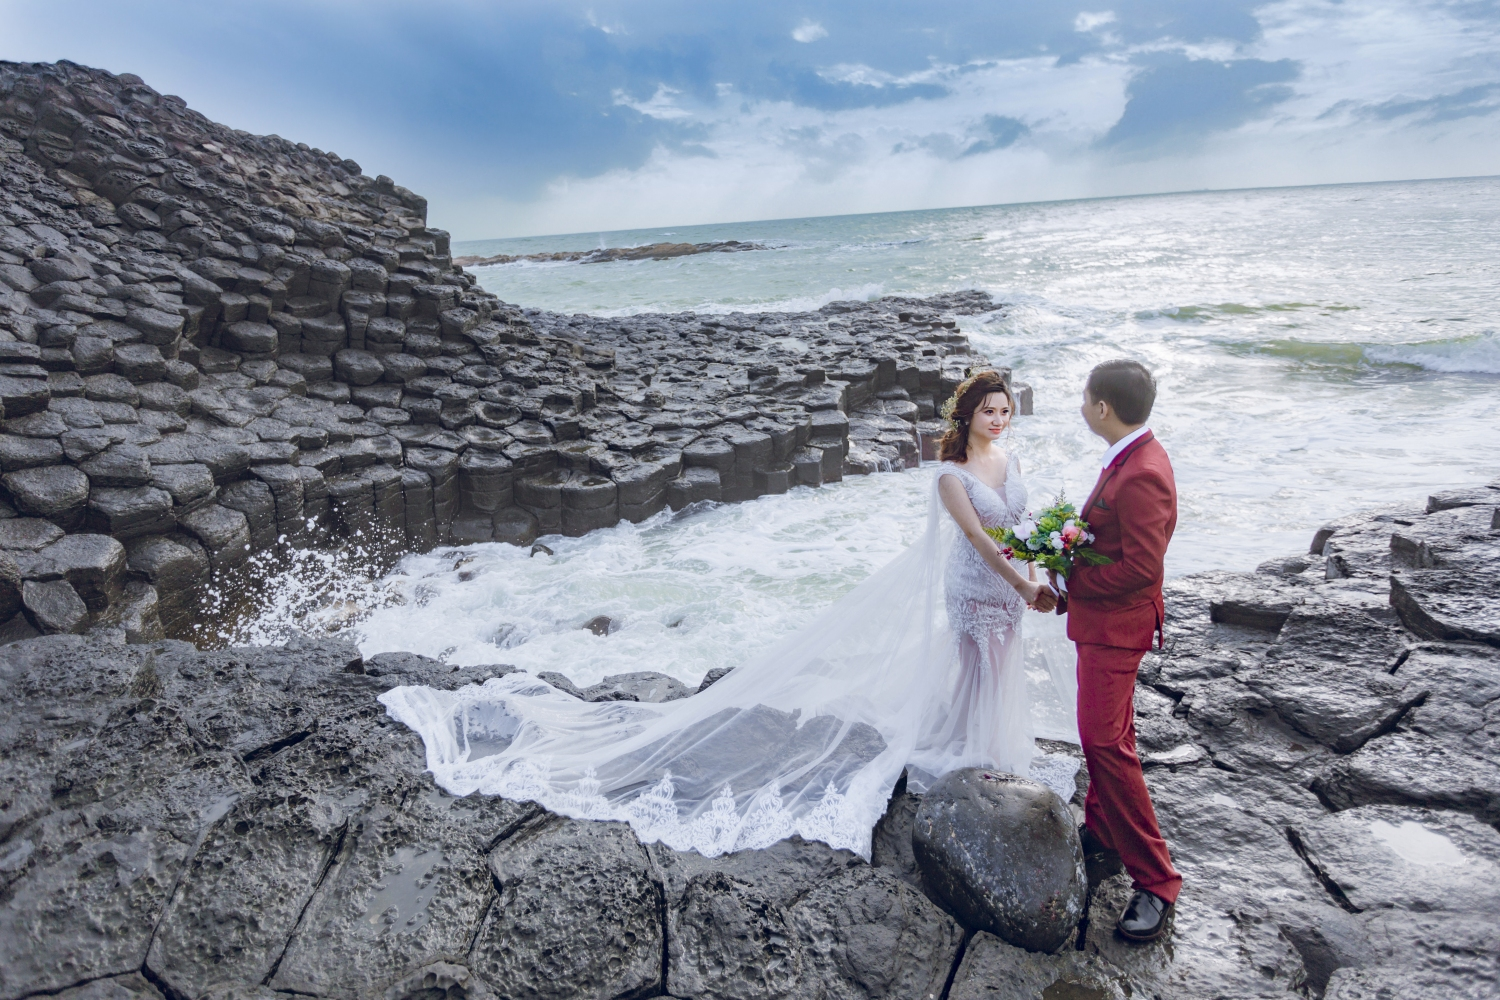 Nếu bạn đang tìm kiếm một địa điểm chụp ảnh cưới đẹp tại Phú Yên, bạn không thể bỏ qua những địa điểm đặc biệt ở địa phương này. Đến với các địa điểm đặc sắc như biển Gành Đá Dĩa hay cầu Hòn Rơm, bạn sẽ có được những bức ảnh cưới tuyệt đẹp, đầy hứng khởi và đáng nhớ.